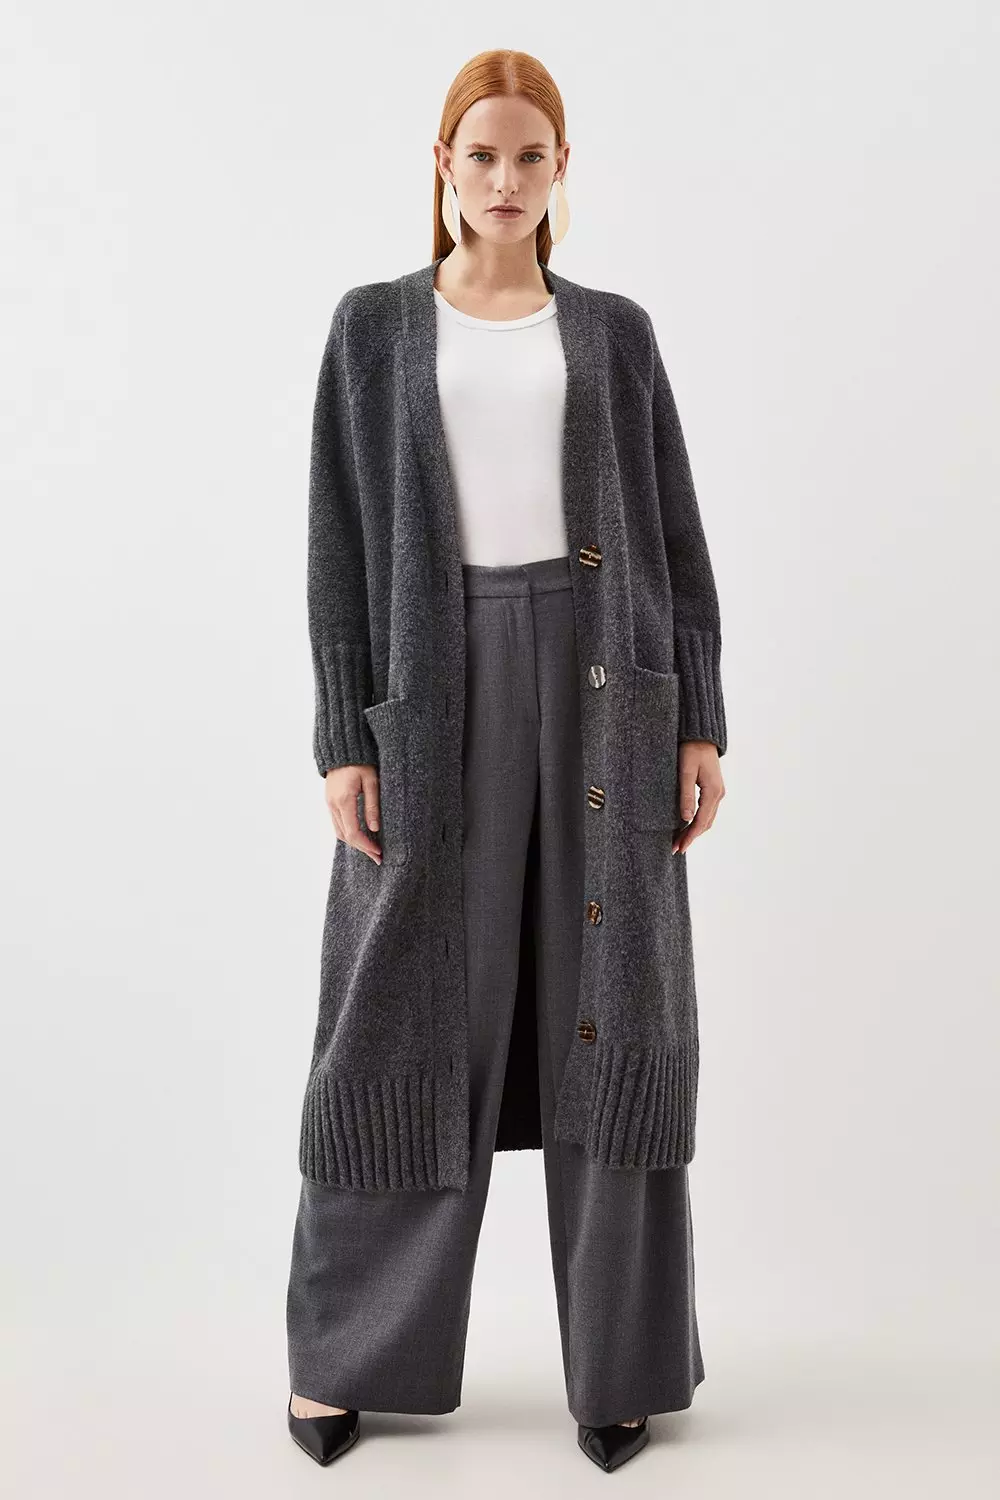 Wool Blend Oversized Longline Knit Cardigan | Karen Millen